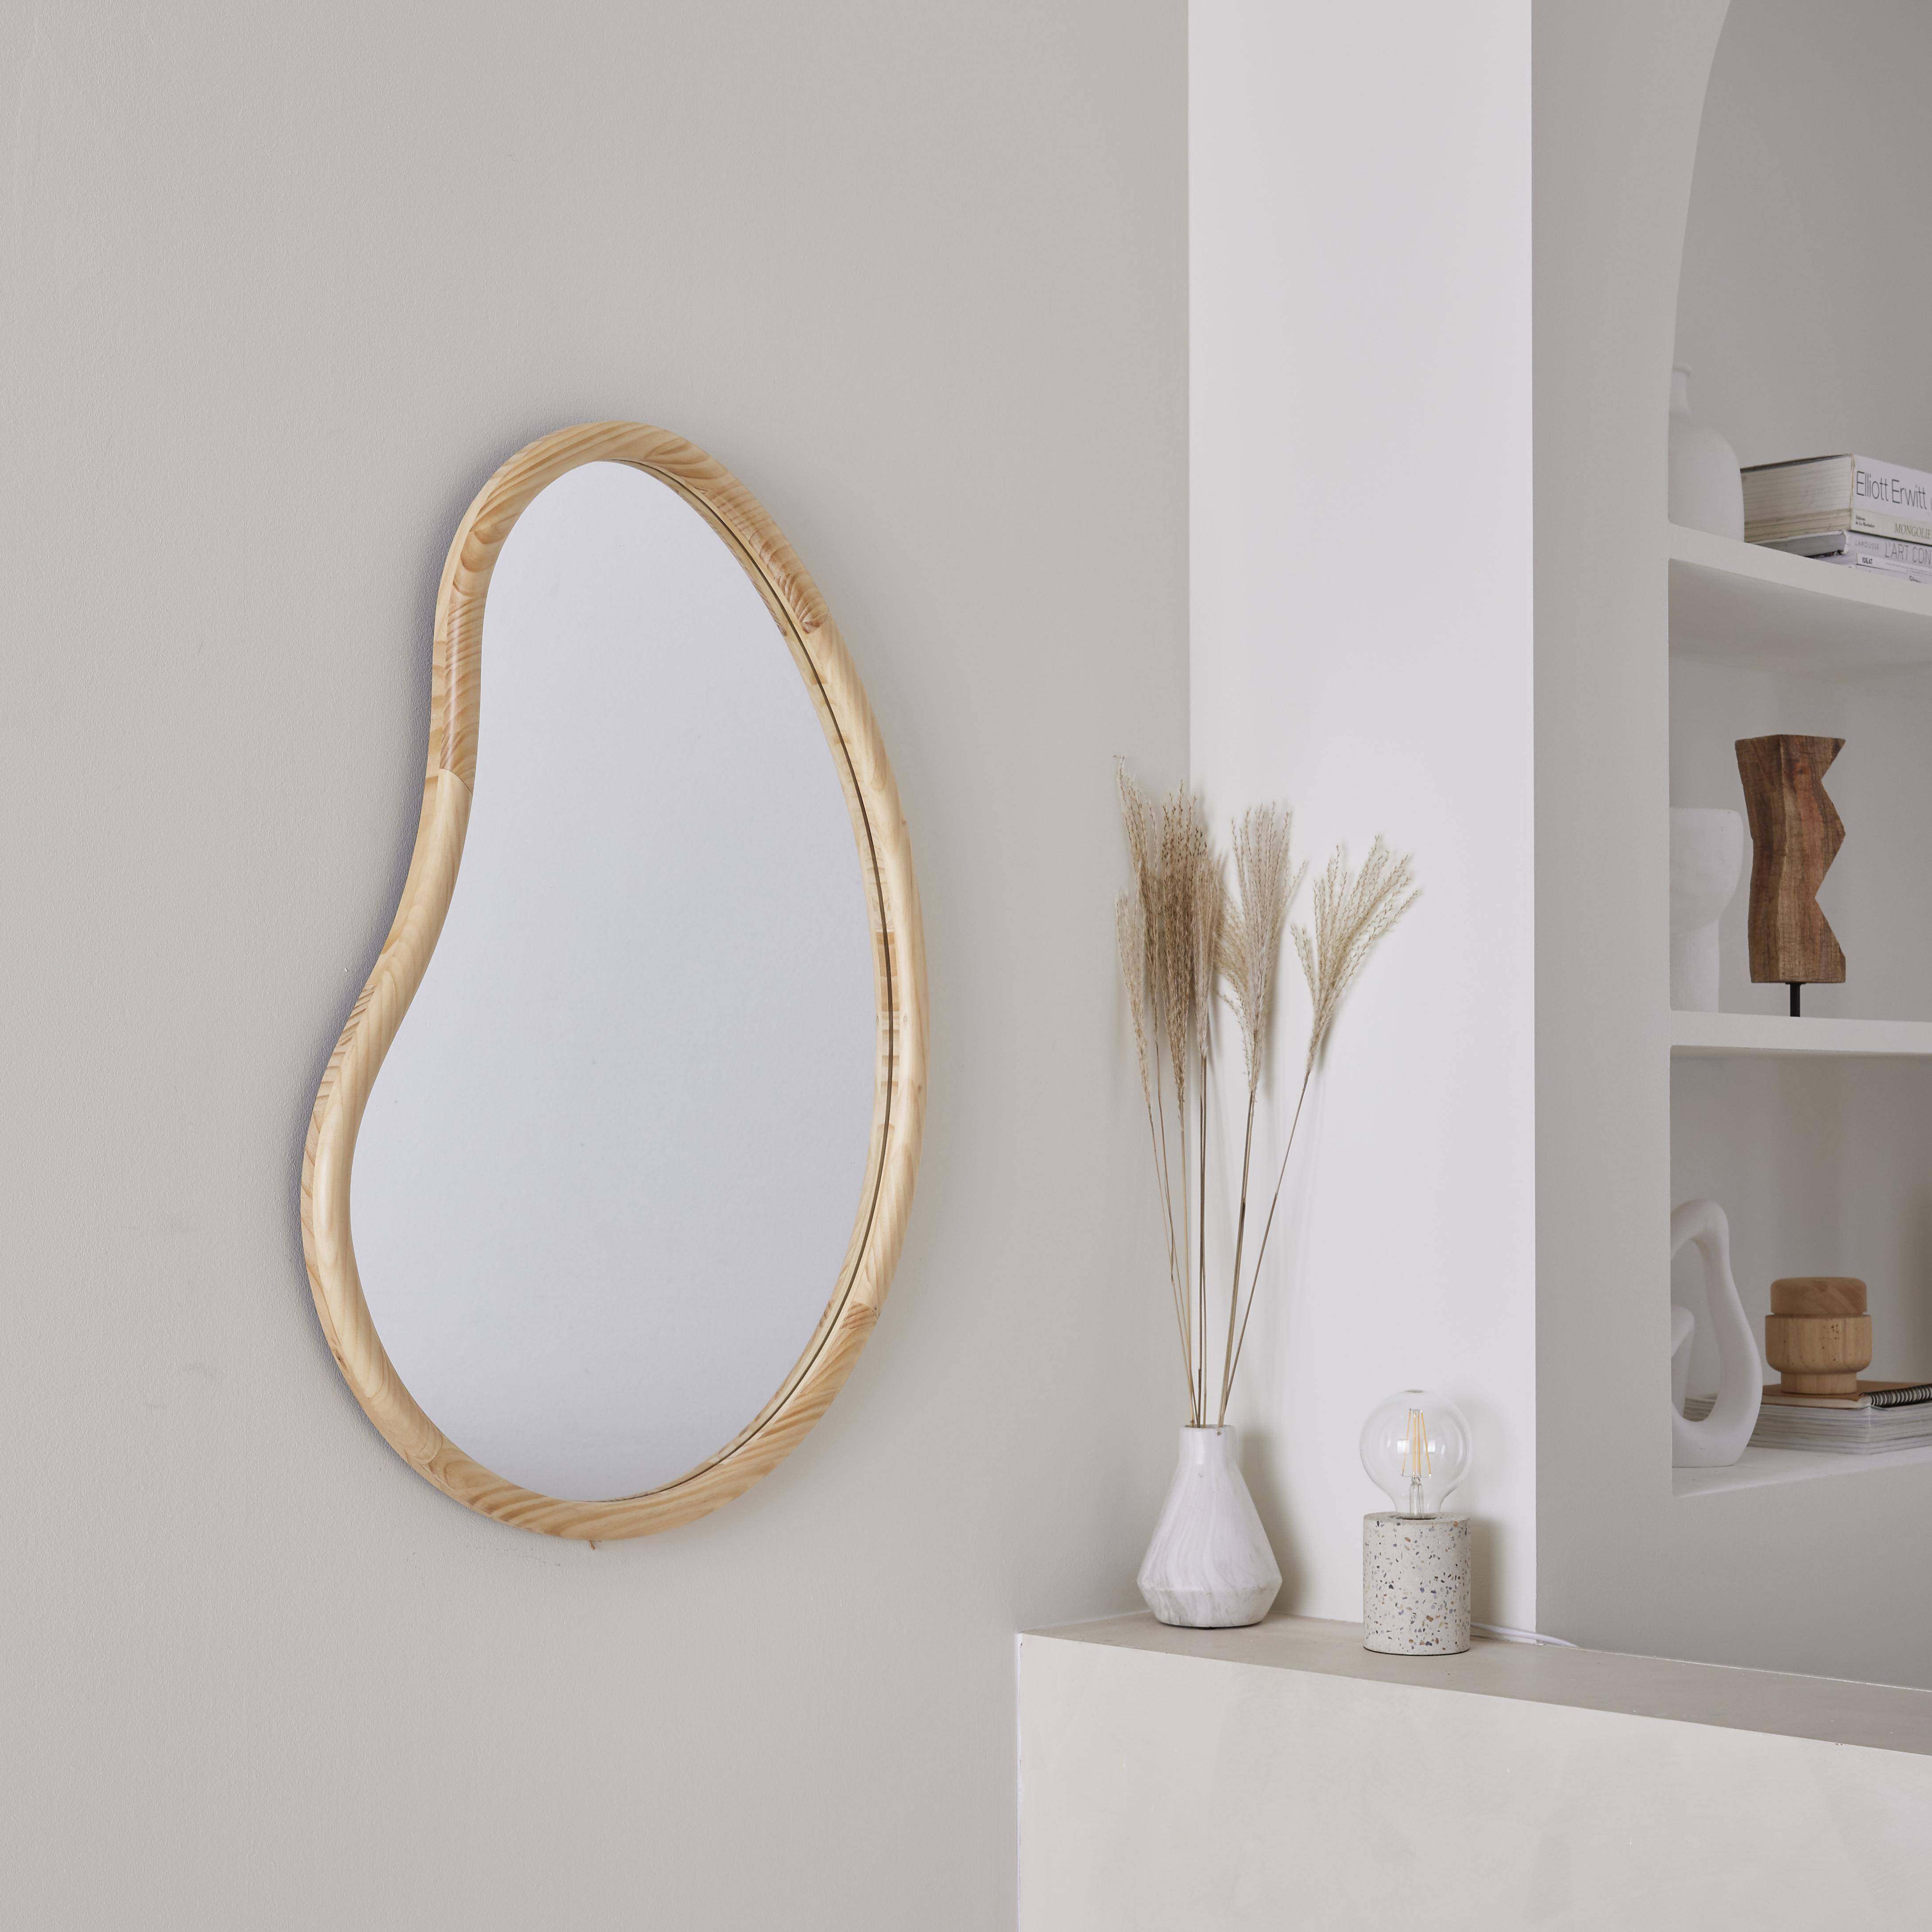 Organischer Spiegel aus Tannenholz 85cm 3cm dick naturfarben ideal für Eingang, Schlafzimmer oder Bad - Jacob Photo1